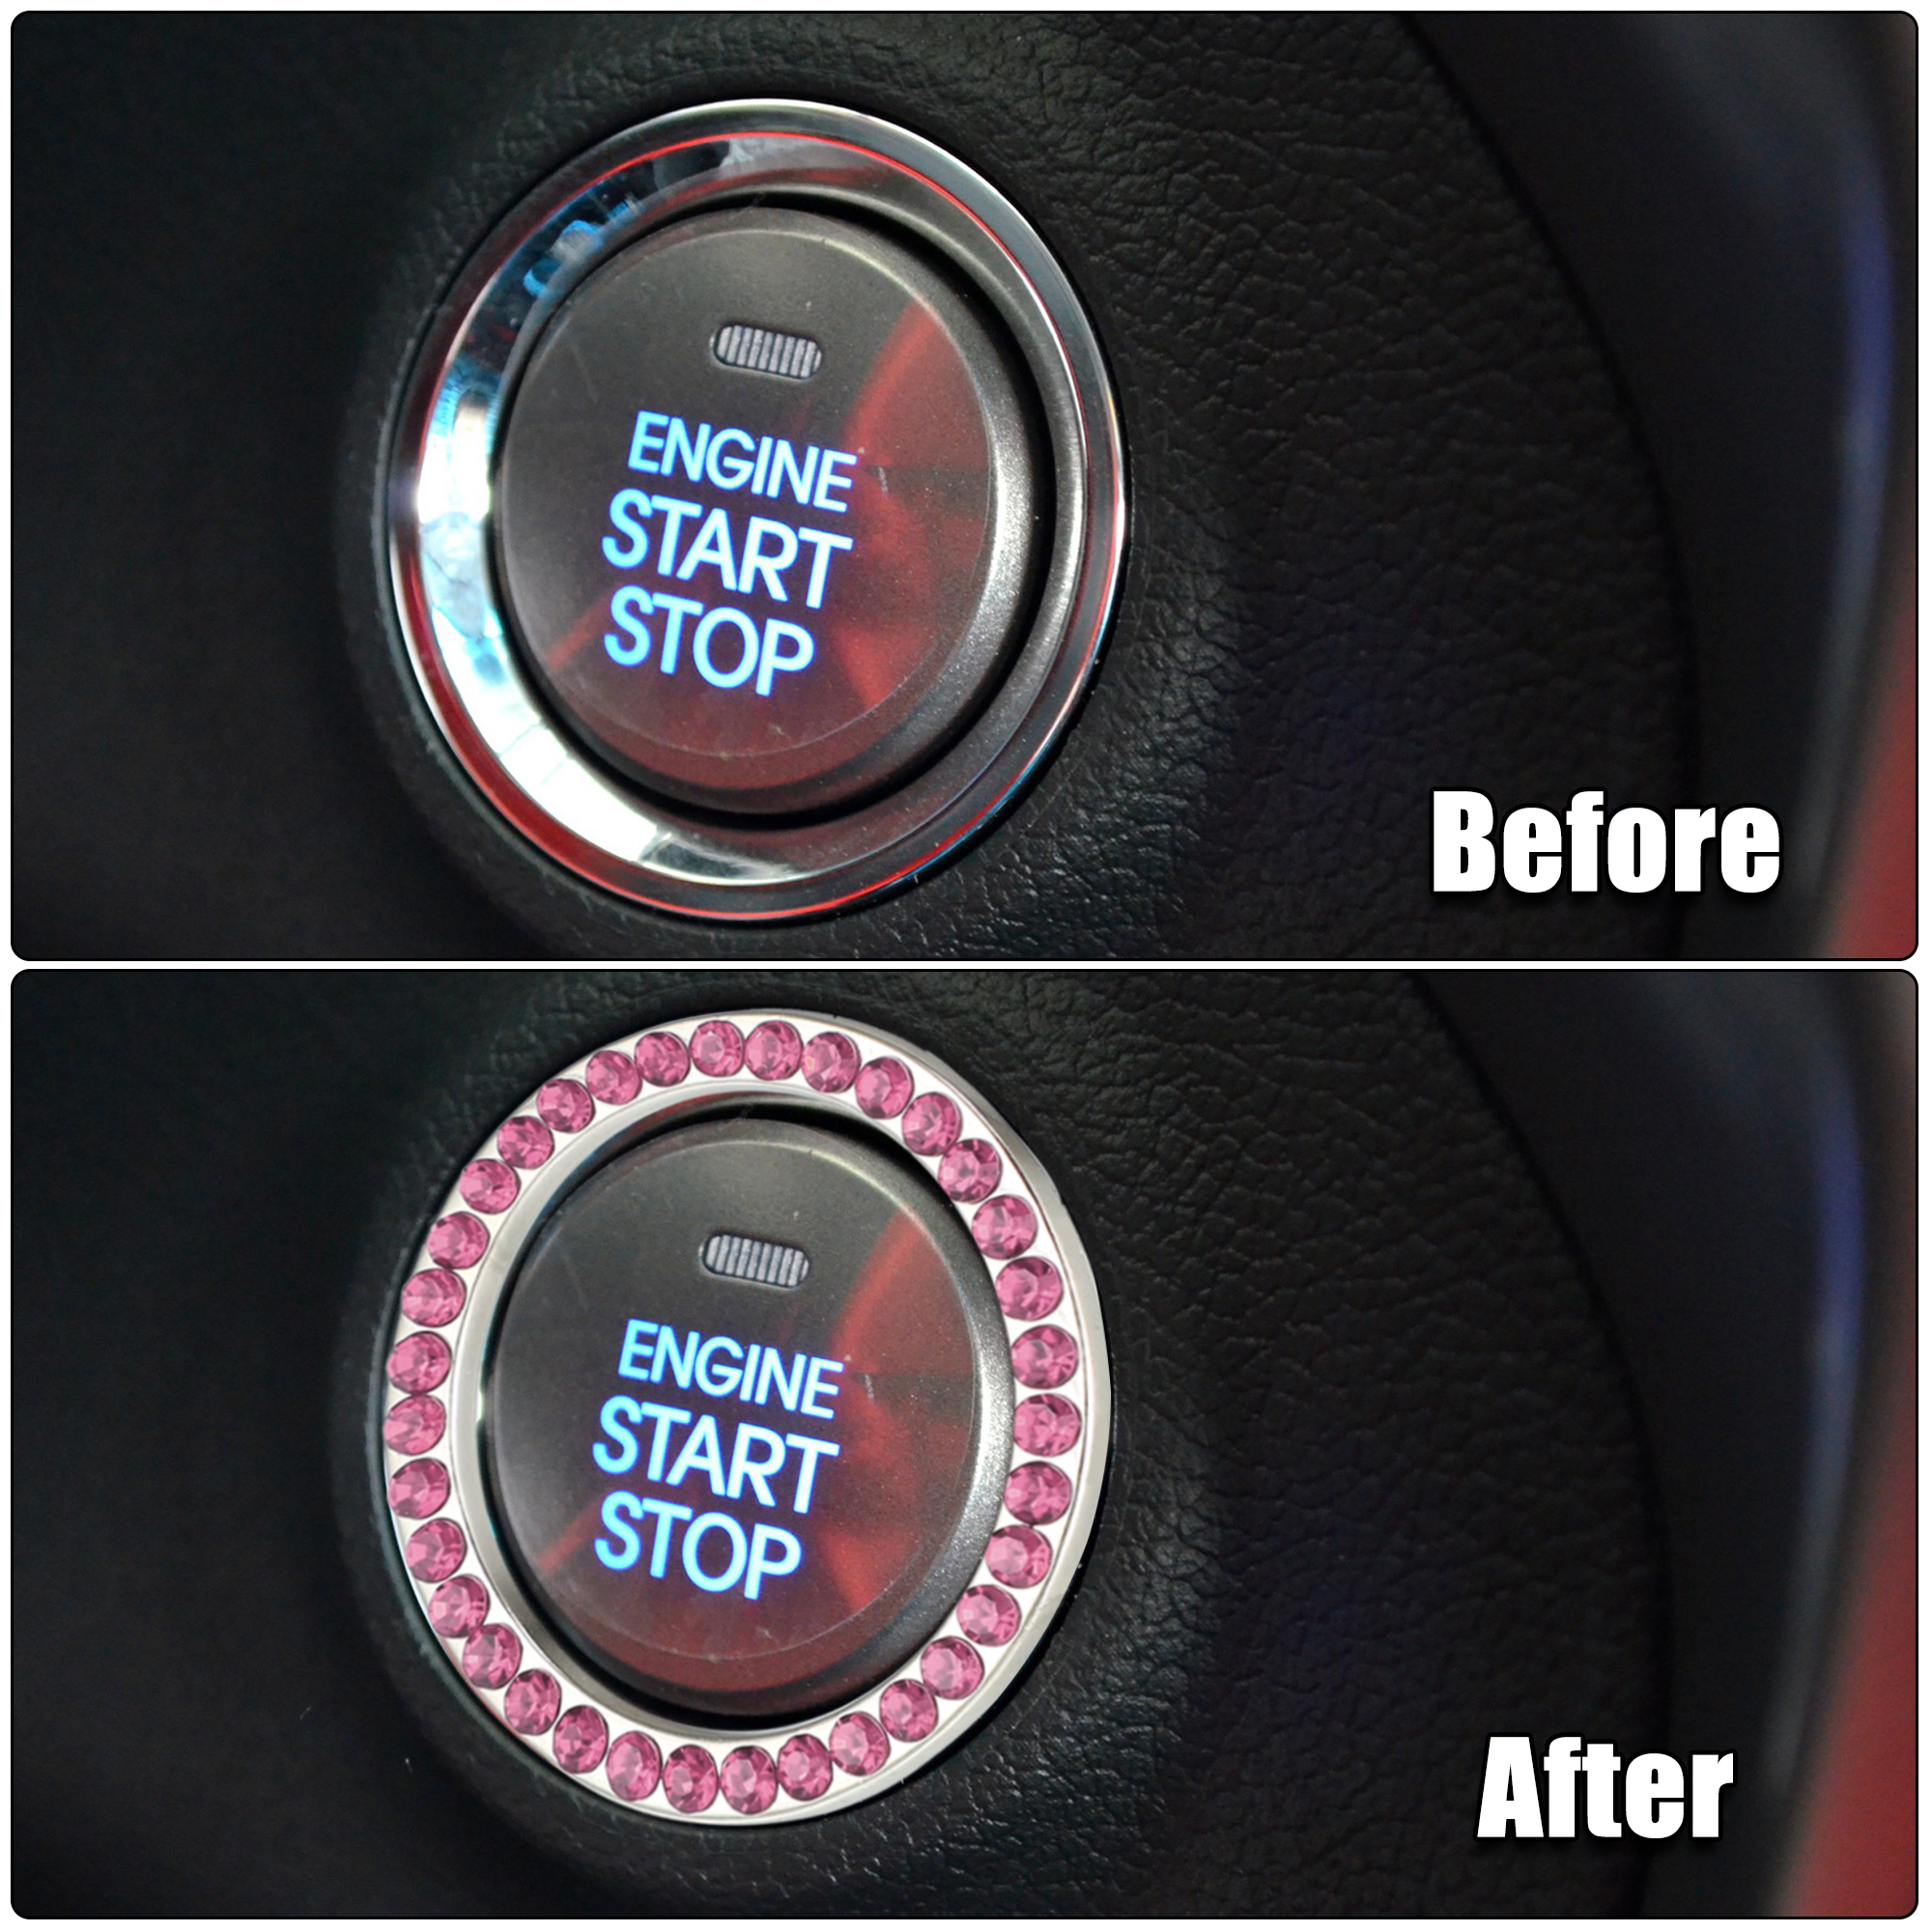 Unique Bargains 5 Pcs Car Engine Start Stop Decoration Ring Push Start Button Knob Trim Pink